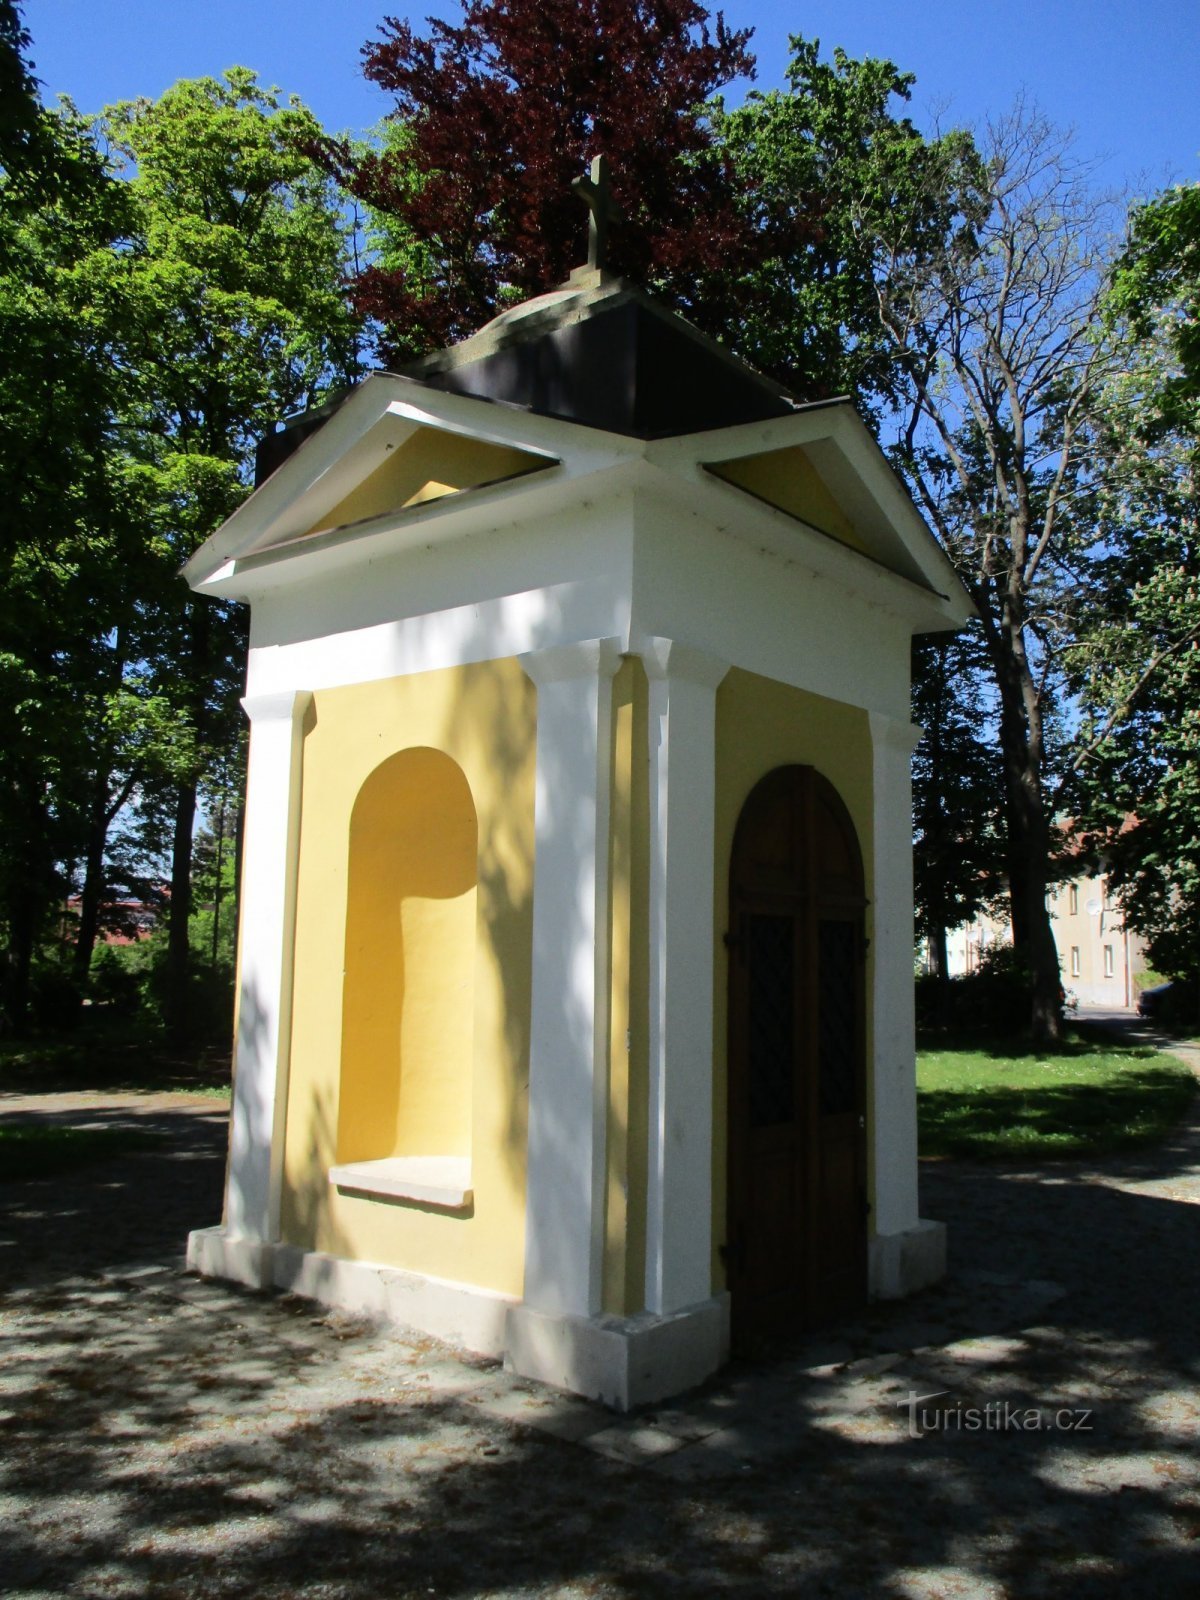 Chapel in Archlebový sady (Dobruška, 18.5.2020/XNUMX/XNUMX)